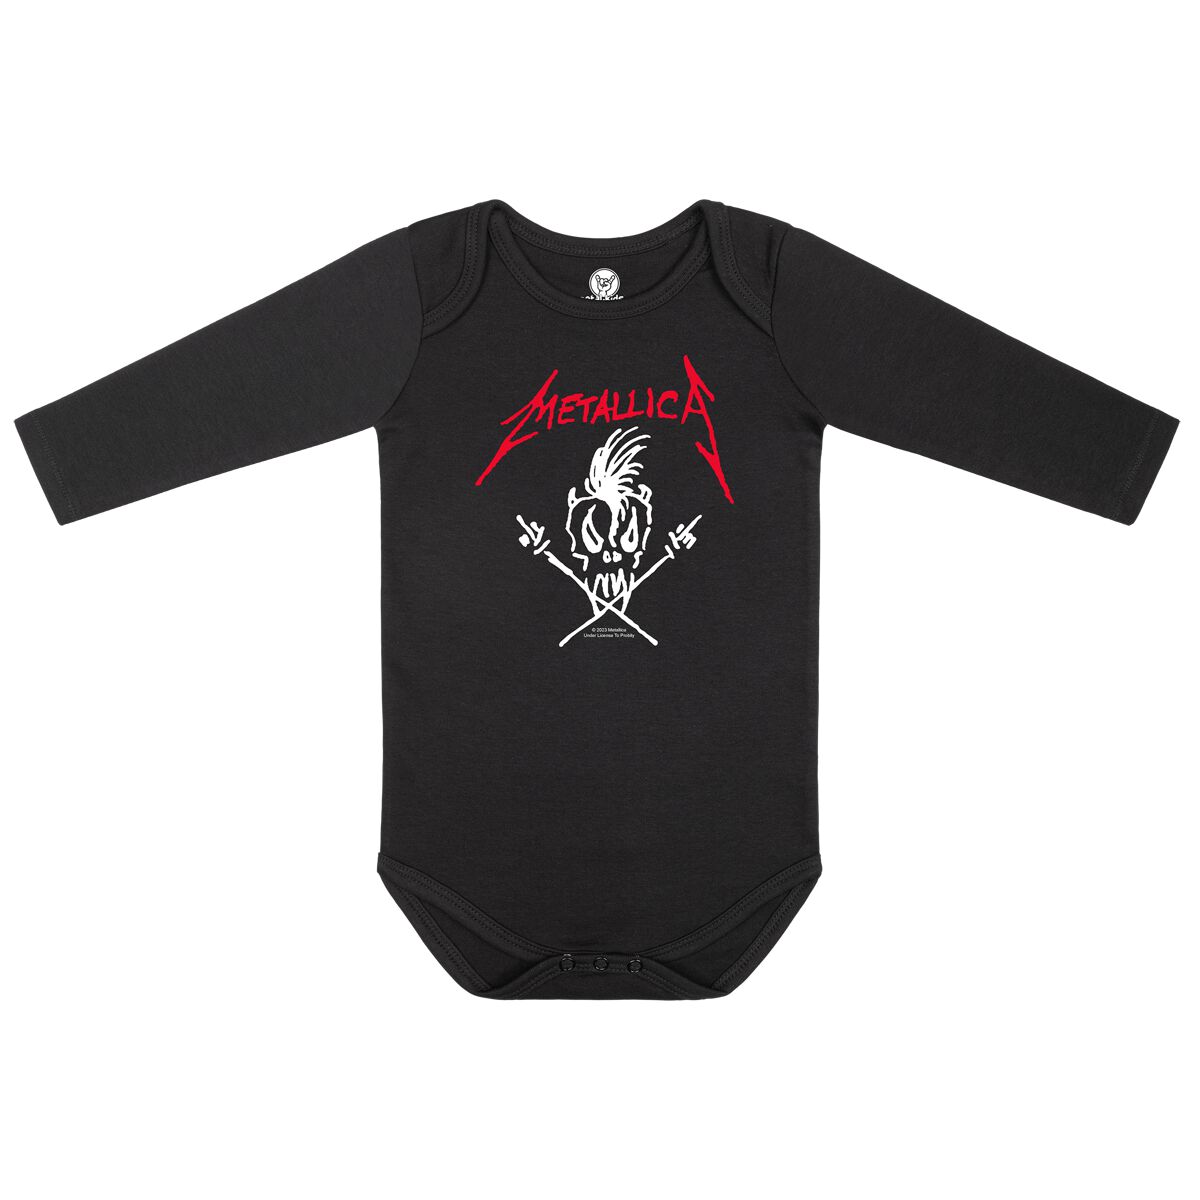 Metallica Body für Neugeborene - Scary Guy - für Mädchen & Jungen - schwarz  - Lizenziertes Merchandise! von metallica